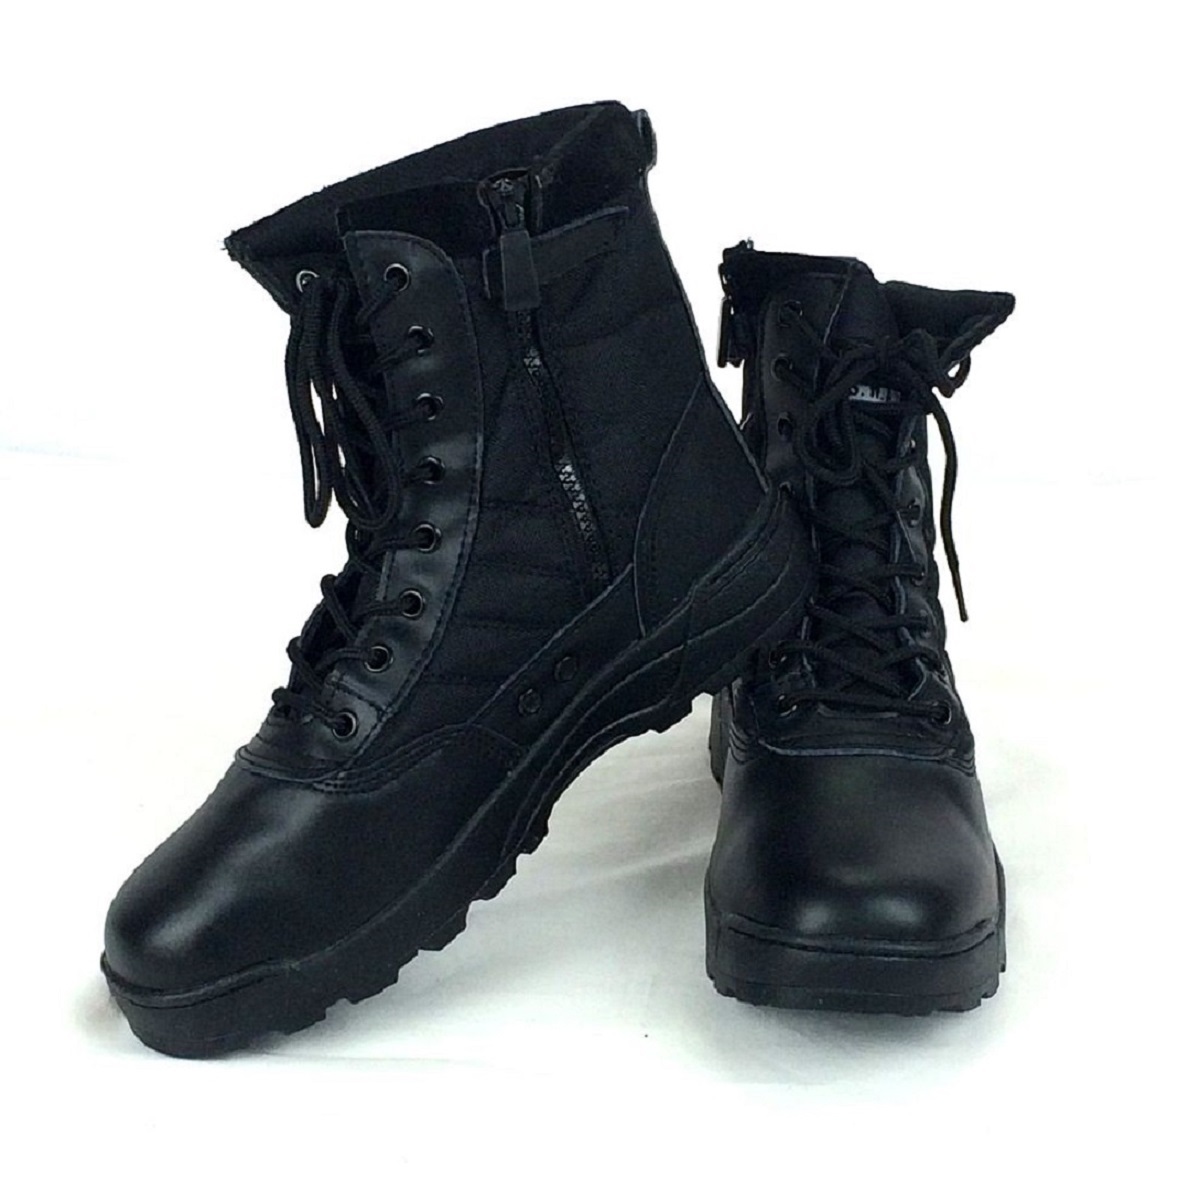 Военные ботинки Тактические ботинки Боевые ботинки Rider Boots Рабочая обувь Обувь Боковая молния Savage Мужские ботинки BK 26,5 см